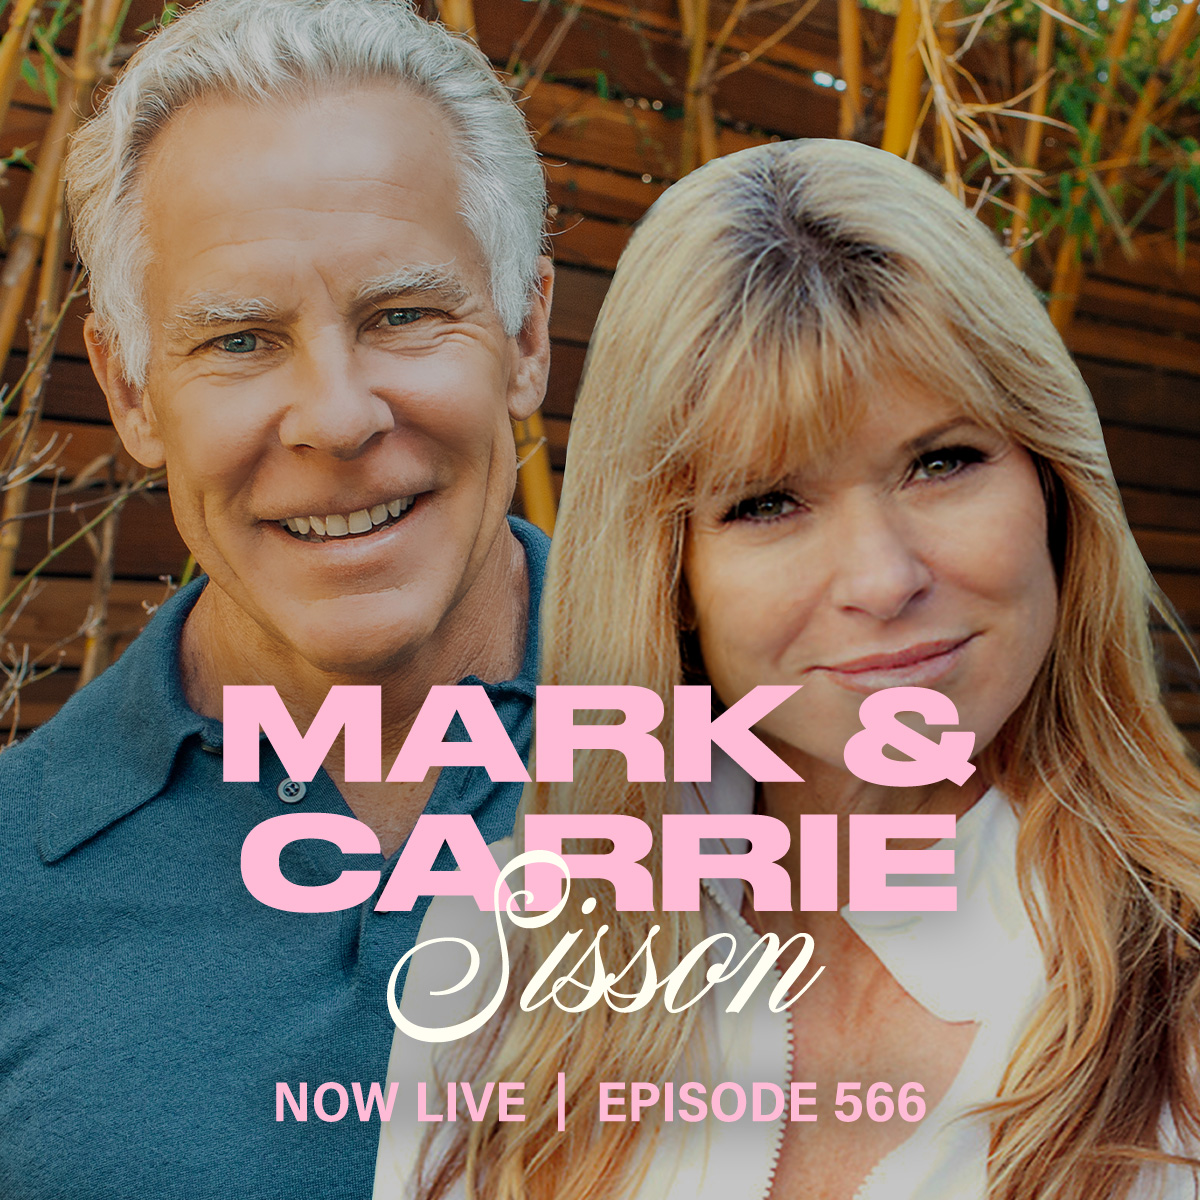 Mark & Carrie Sisson